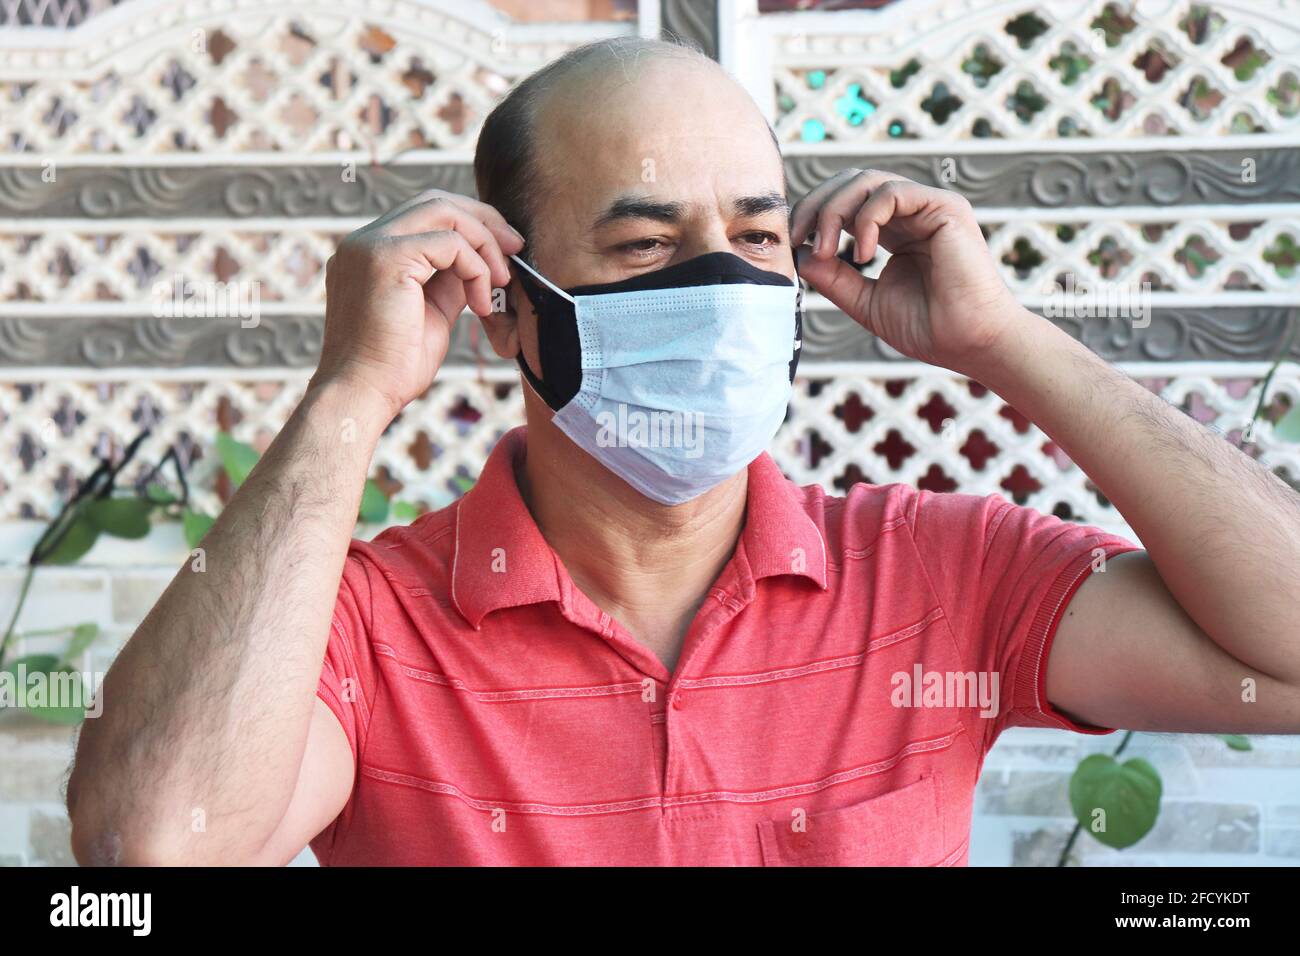 doble máscara prevenir la infección, hombre indio maduro usando dos máscara facial para proteger de la nueva cepa de coronavirus o nueva ola de covid-19 brote en i Foto de stock